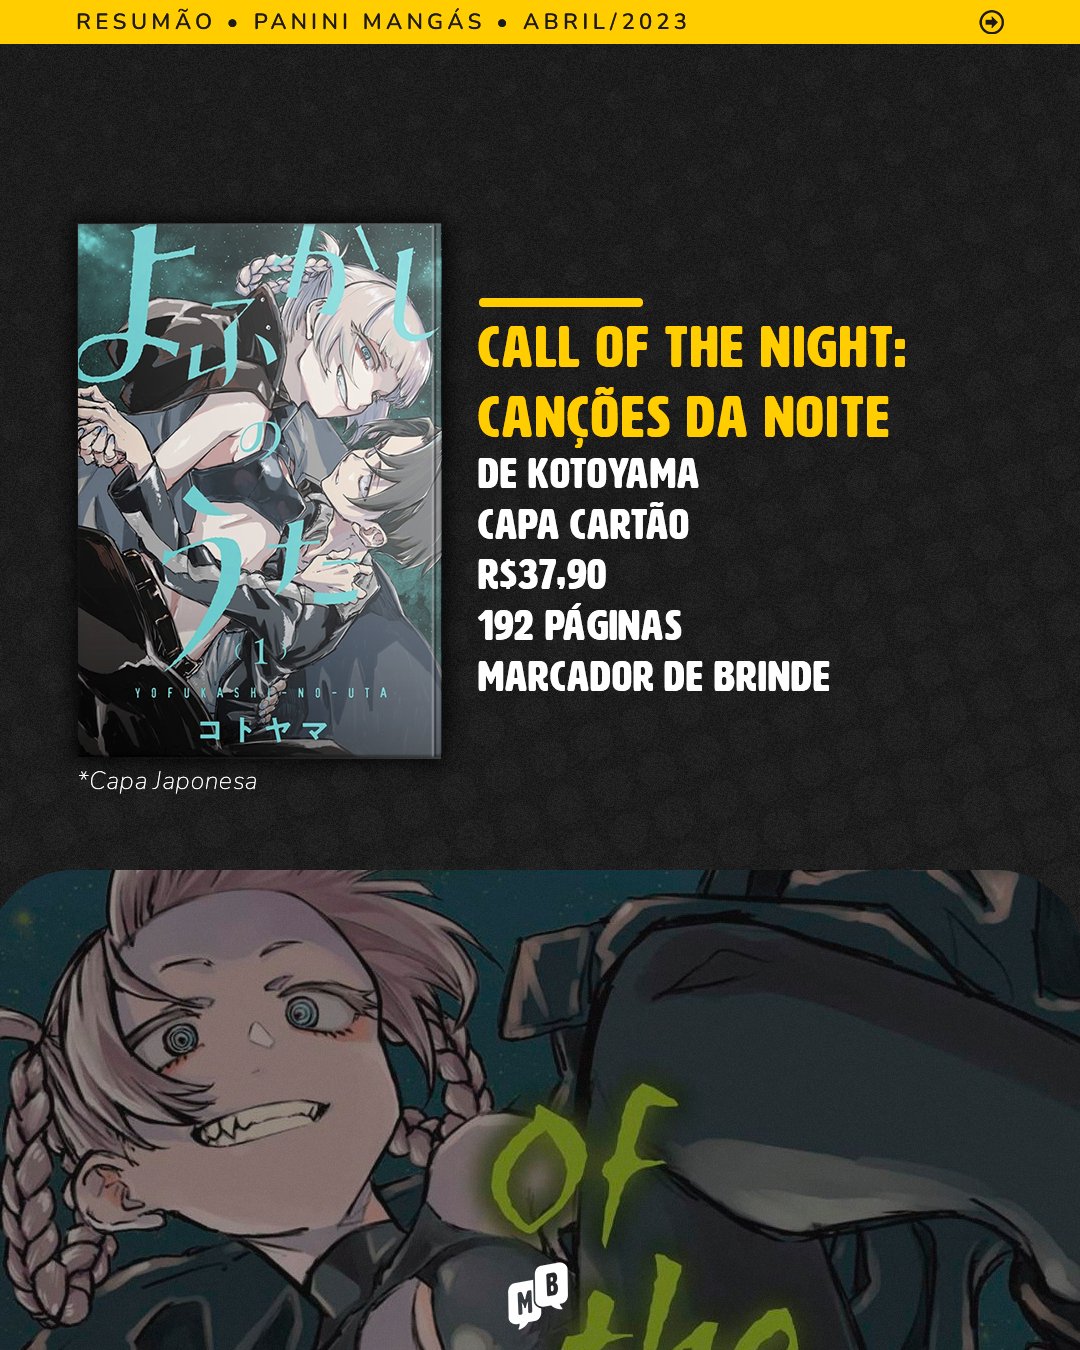 Call of the Night: Canções da Noite: mangá será lançado em abril